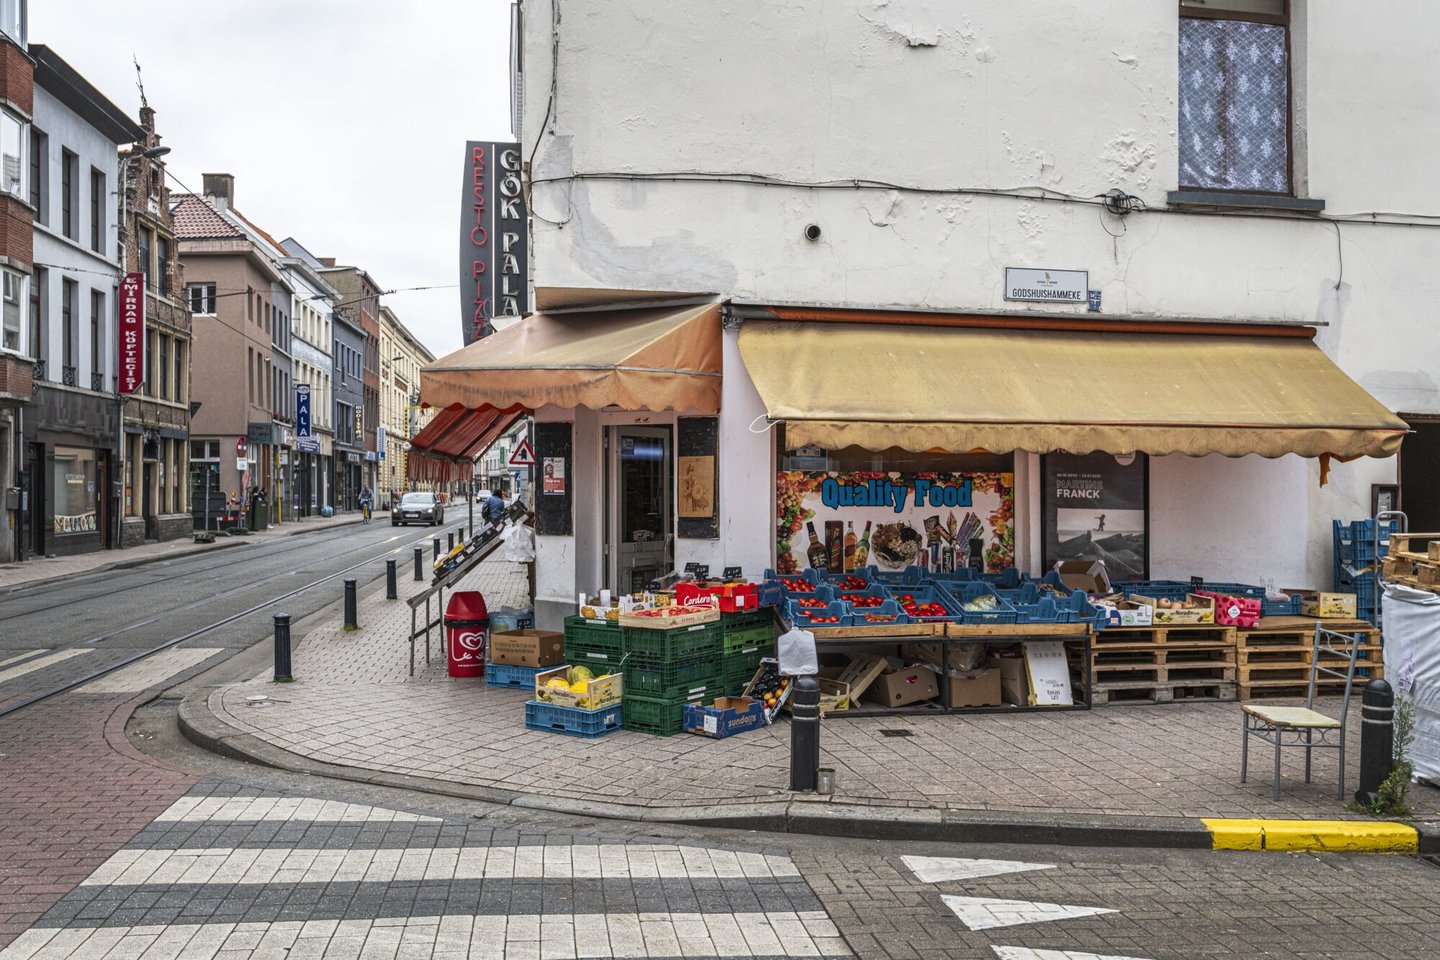 Etalage van Ezat, een winkel van algemene voeding in Gent